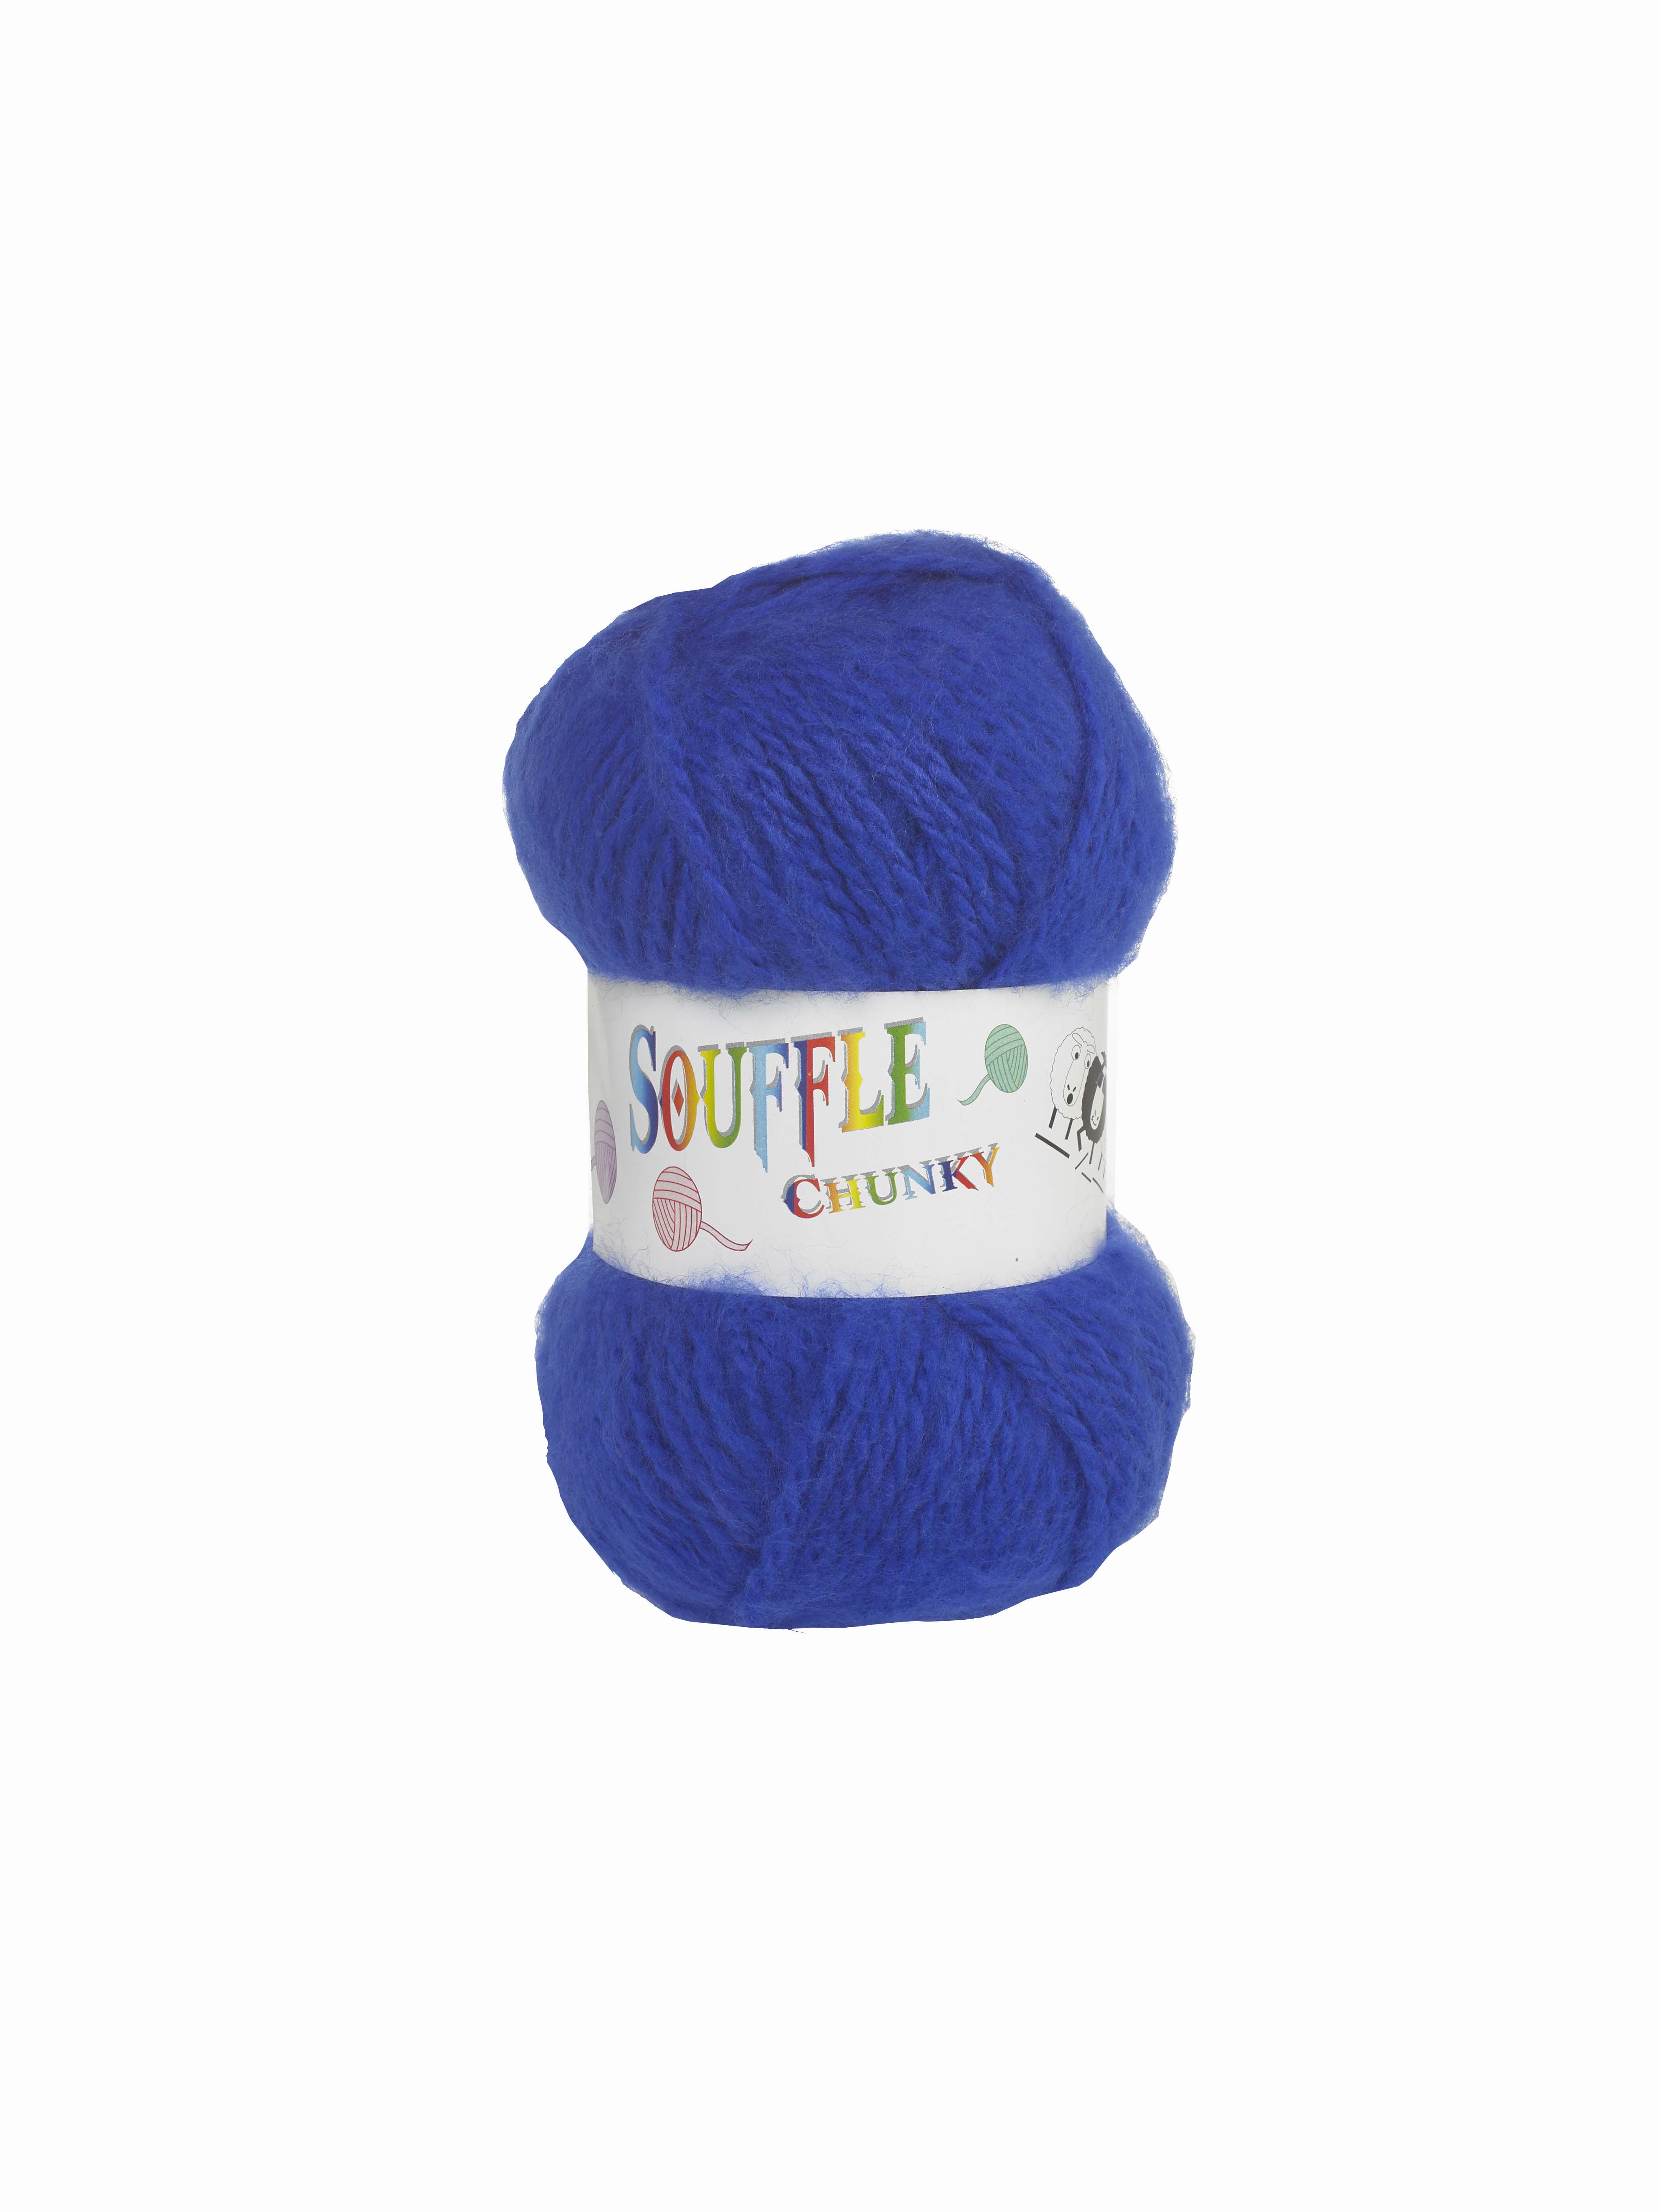 Souffle Chunky Yarn Bleu 119